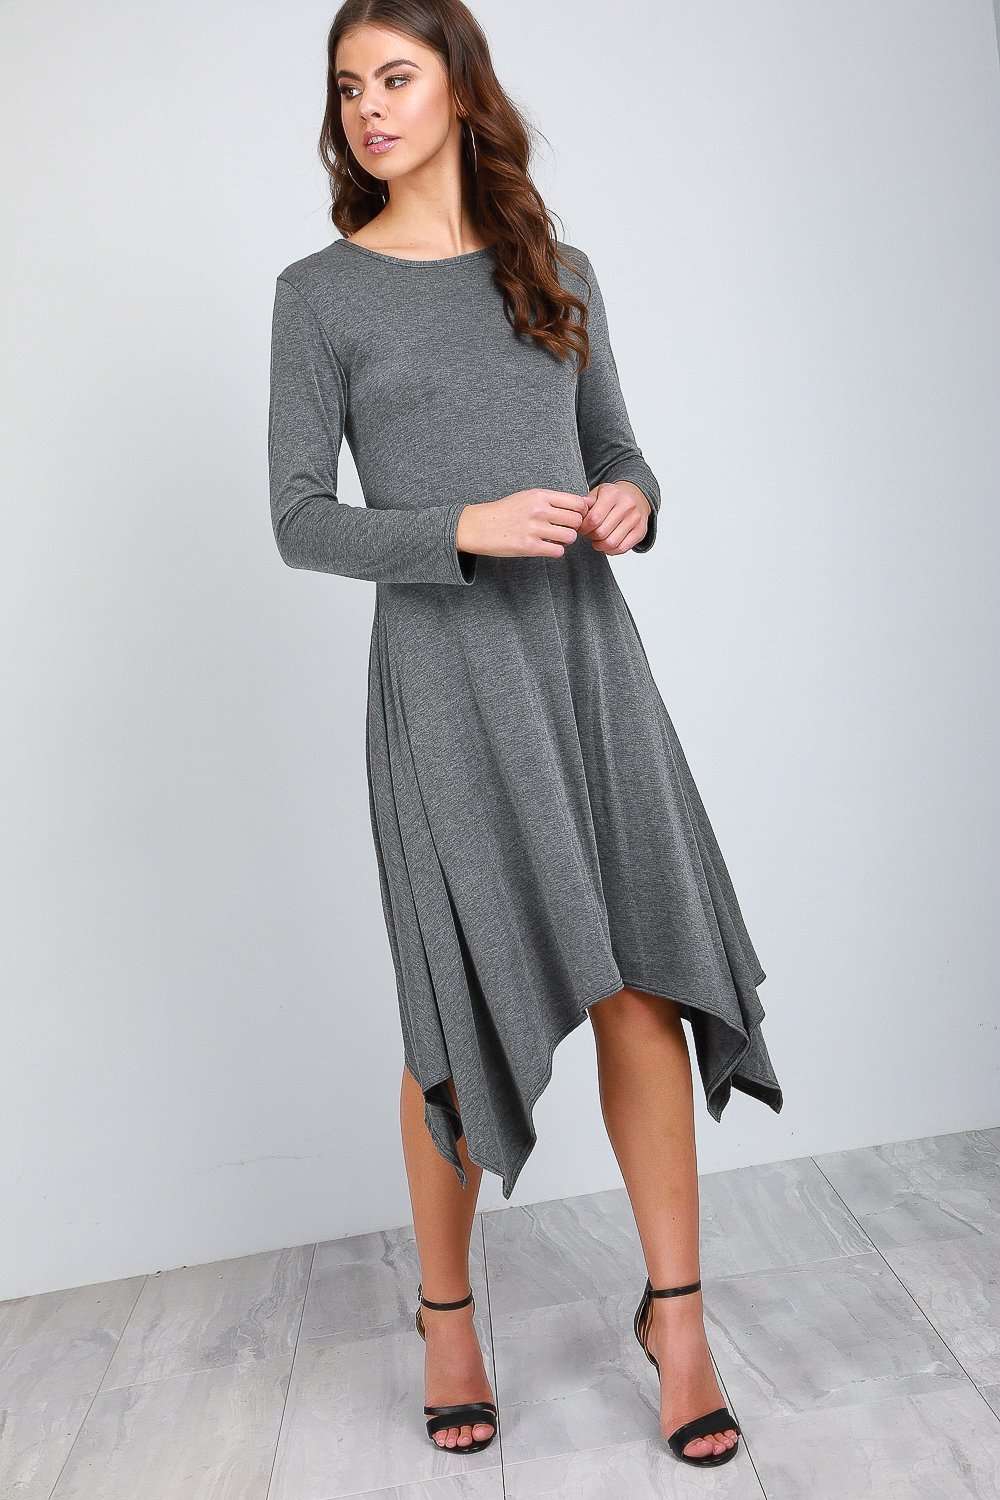 Casie Long Sleeve Hanky Hem Jersey Midi Dress - bejealous-com